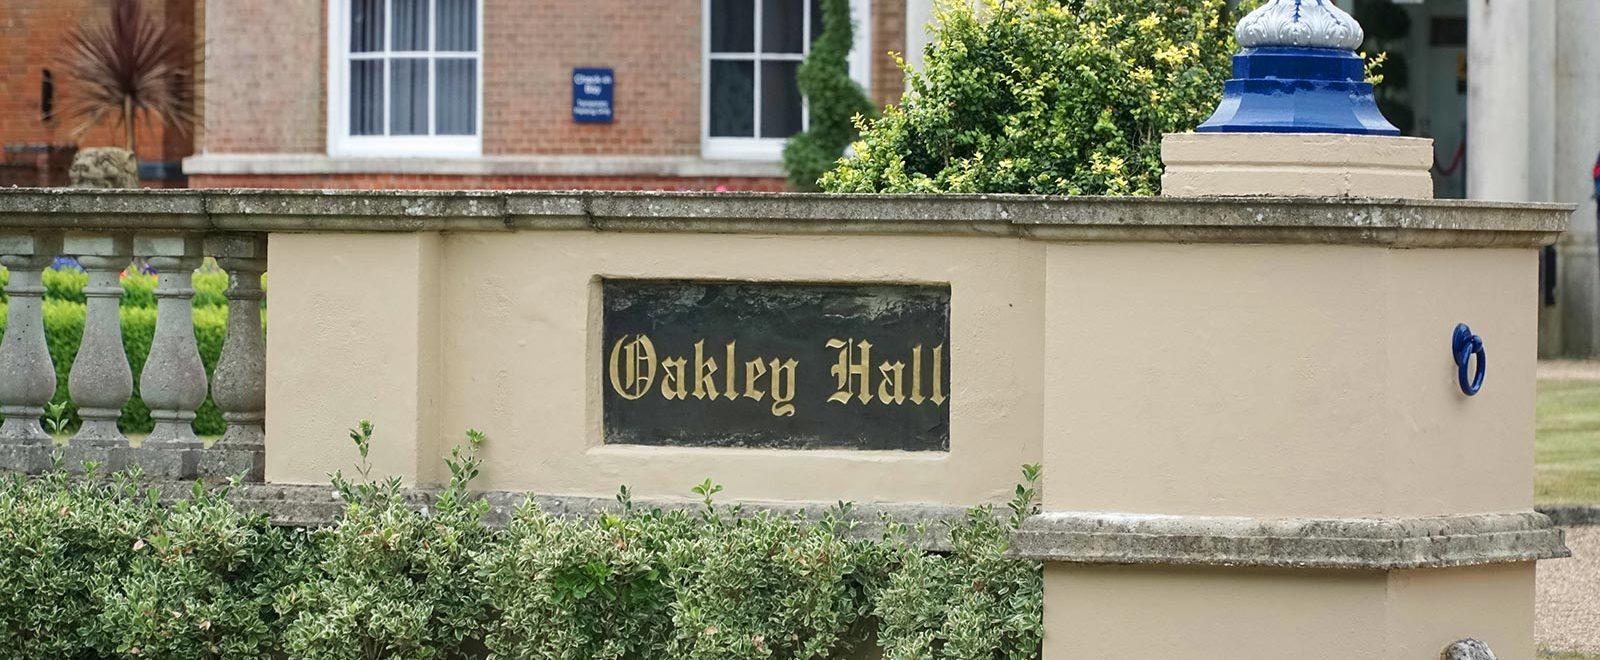 oakley hall entrance basingstoke